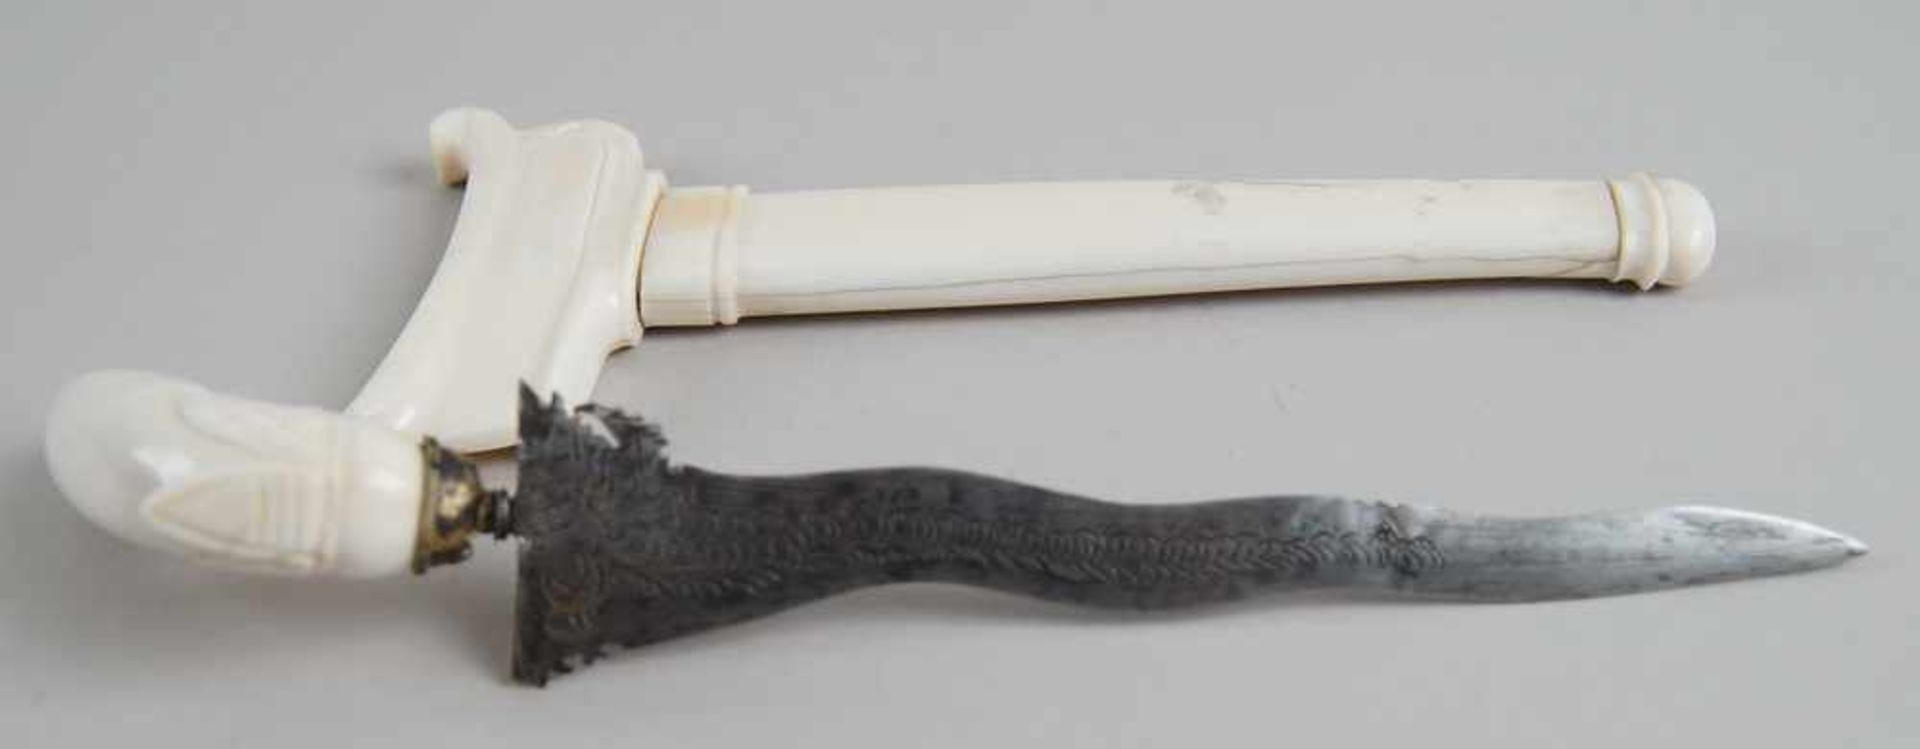 Orientalischer Dolch mit Kris - Klinge, Griff und Scheide aus Elfenbein, rest., 19. JH, - Bild 3 aus 11